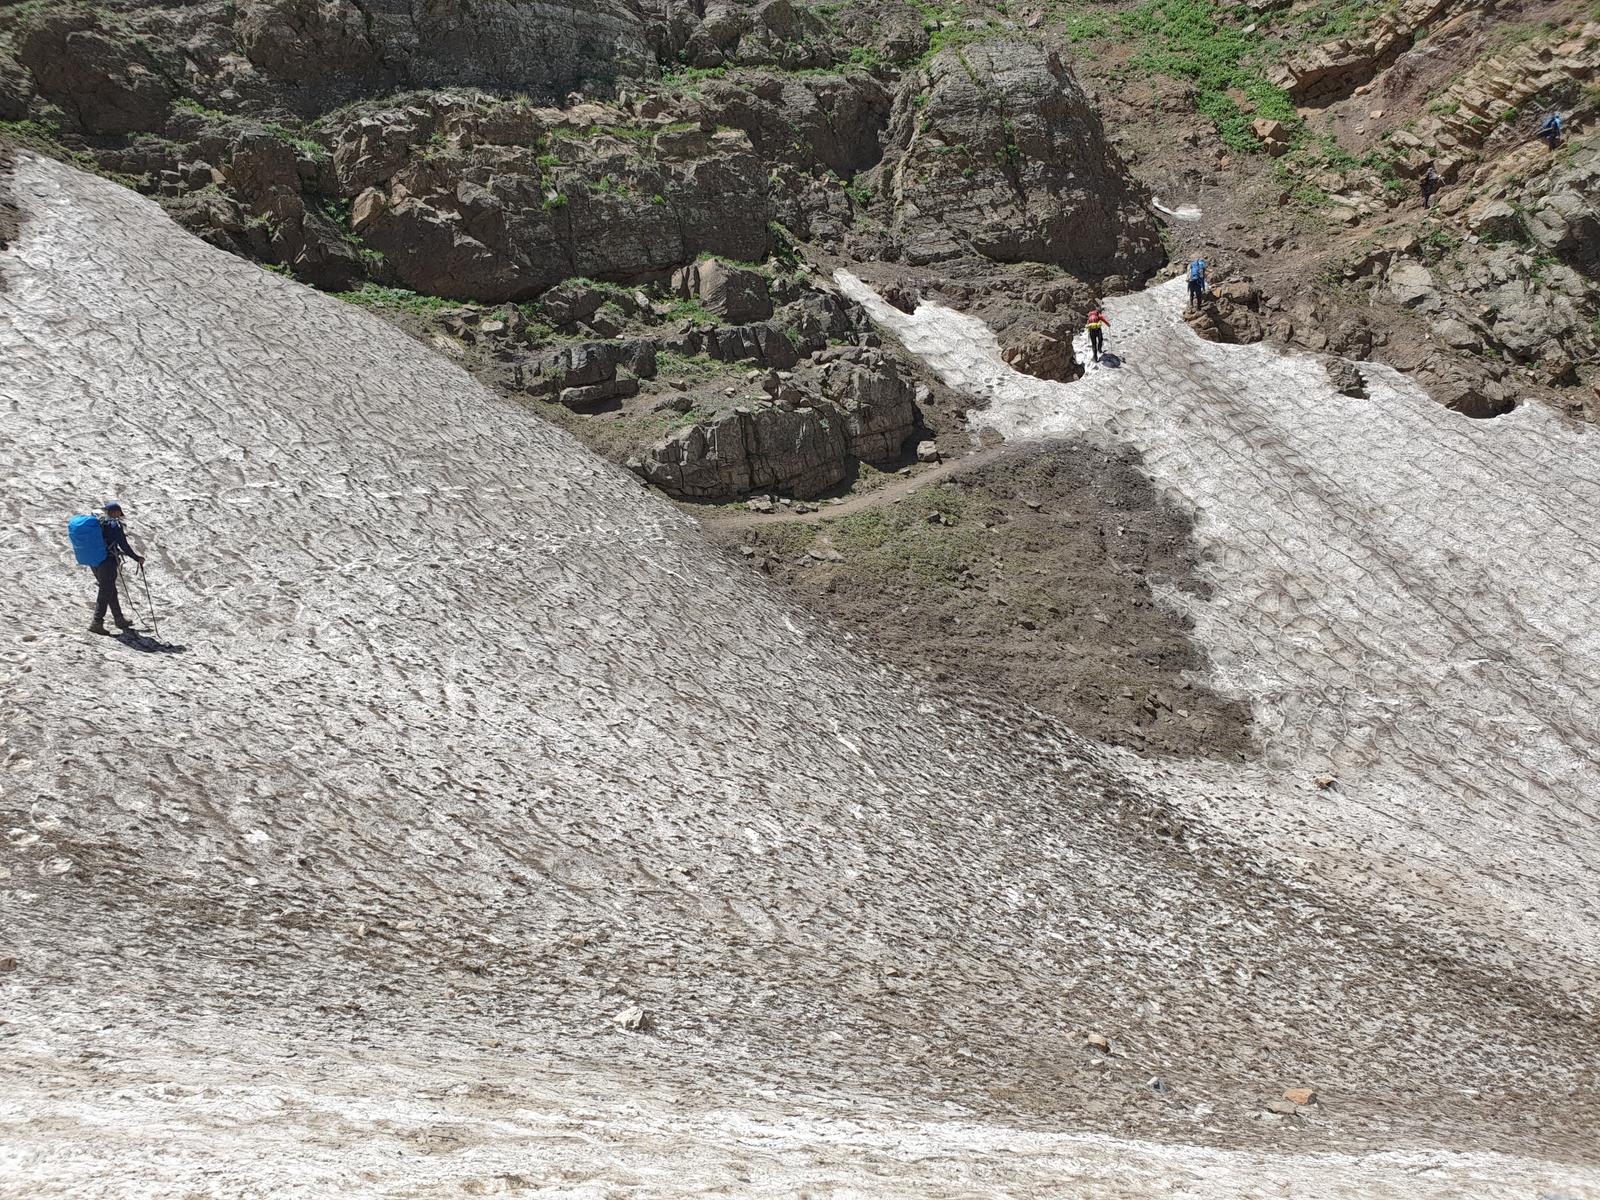 یخچال در مسیر دریاسر, Glacier in Daryasar Route